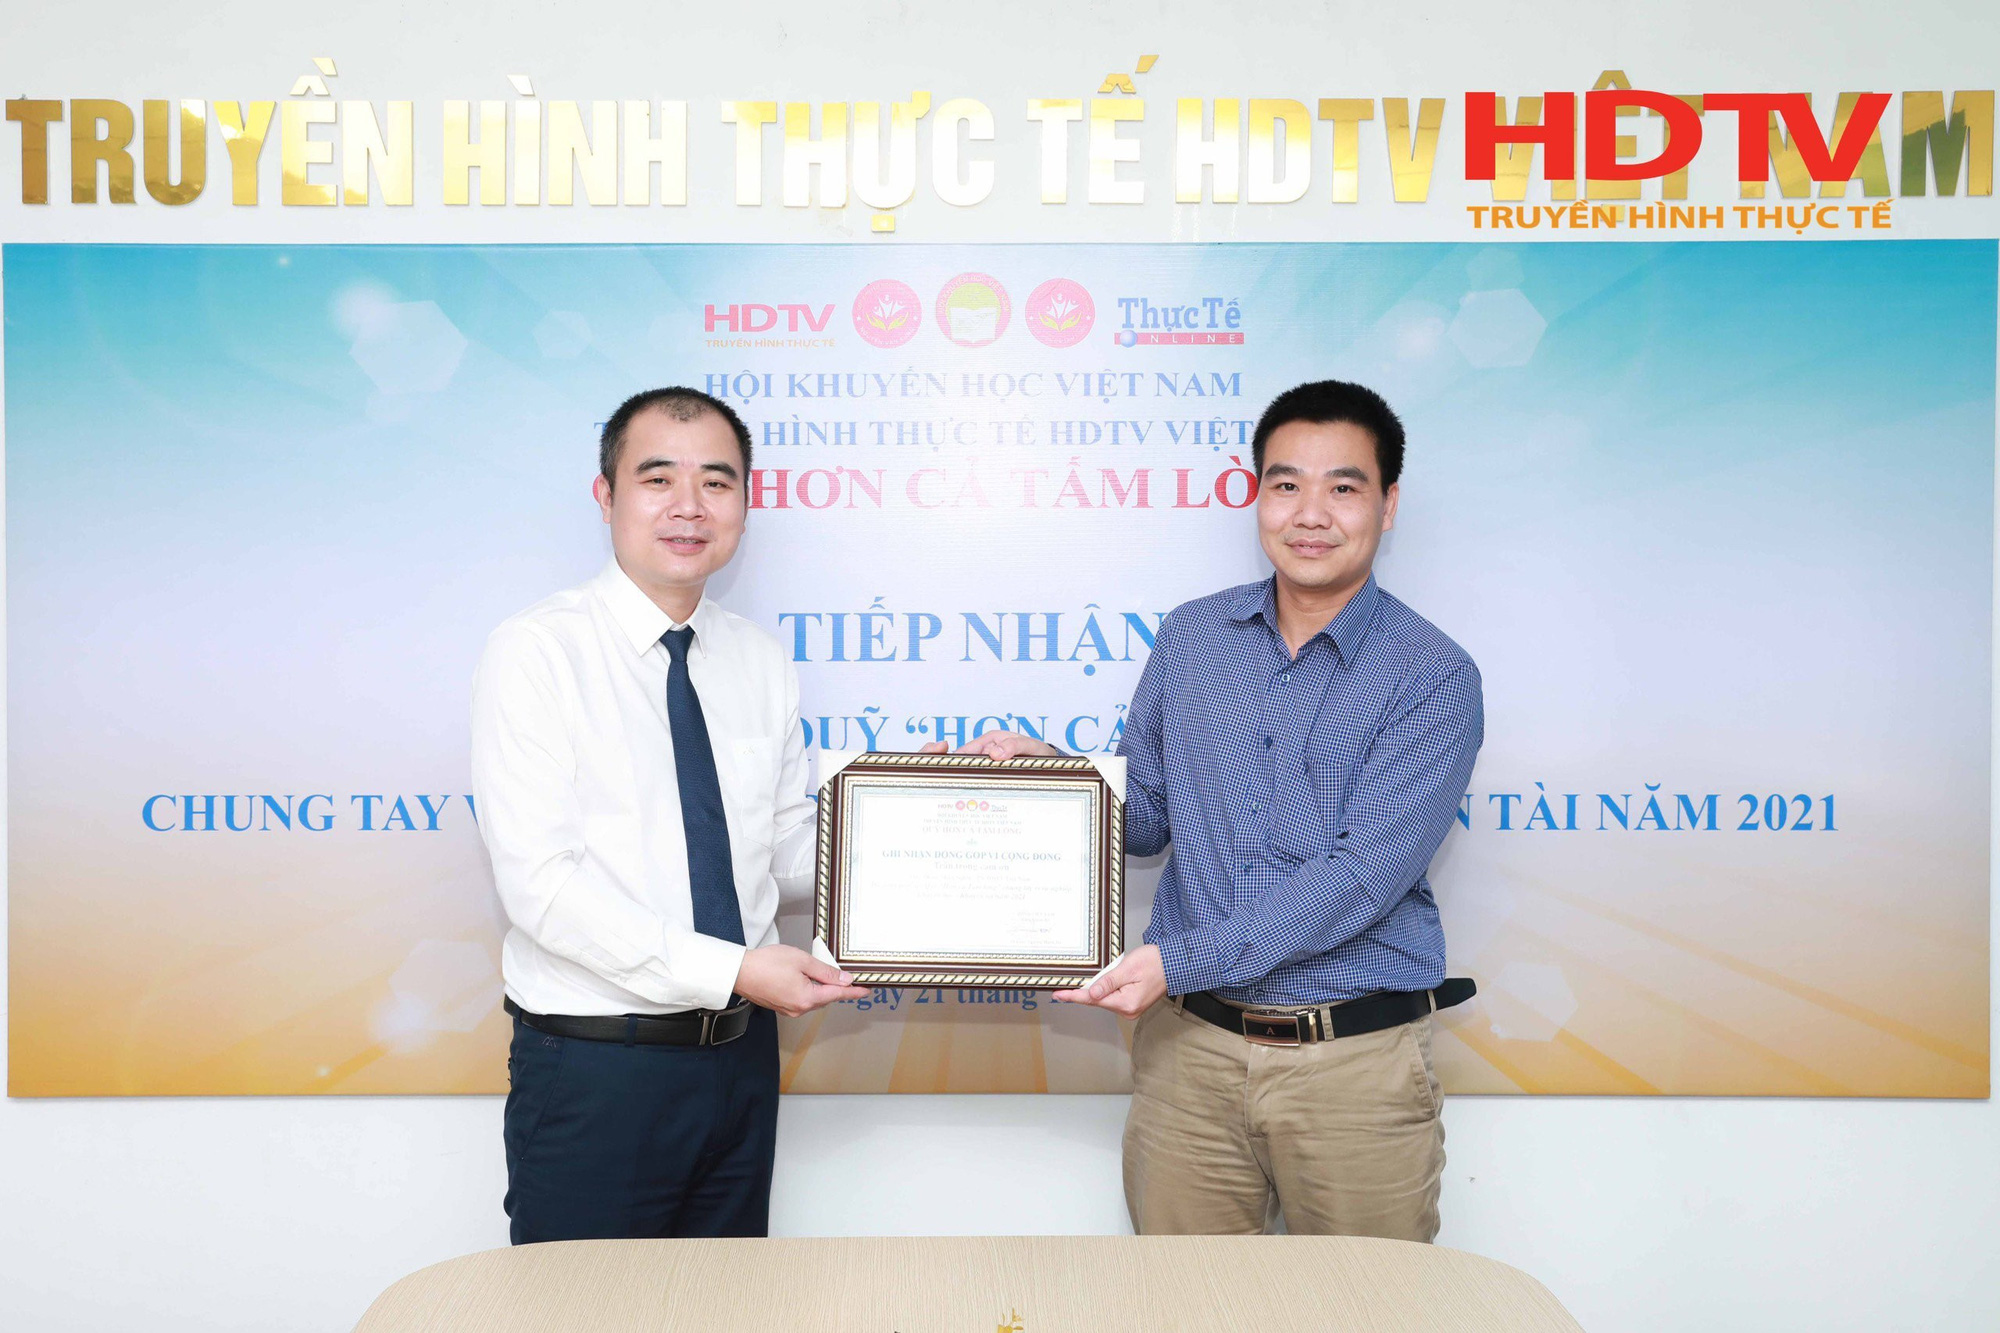 HDTV Việt Nam thực hiện công tác thiện nguyện - Khuyến học Quý 4 năm 2021 - Ảnh 16.